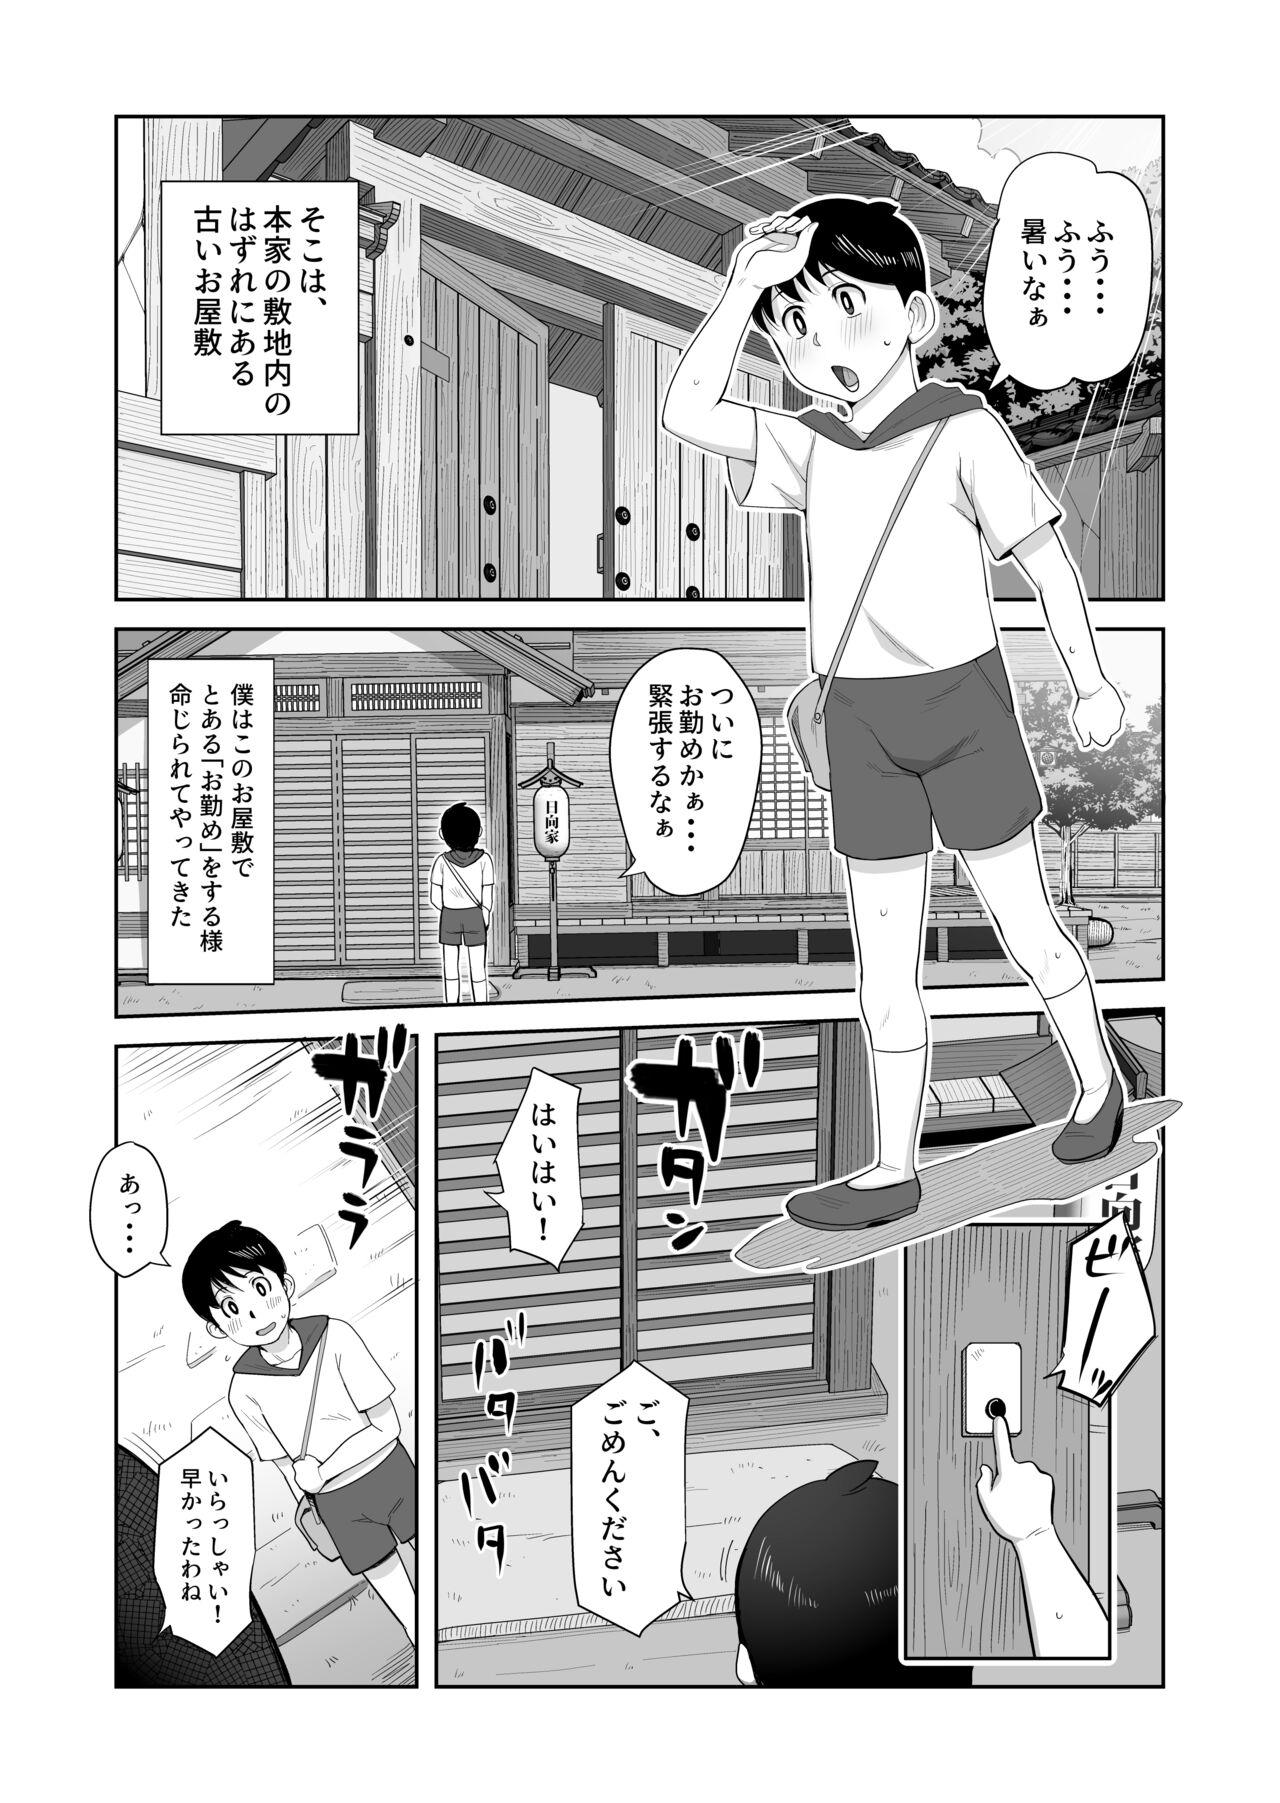 Grandpa [B-Kyuu Site (bkyu)] B-Kyuu Manga 12 Icnizoku no Shikitari 1-yame (Naruto) - Naruto Milk - Page 3